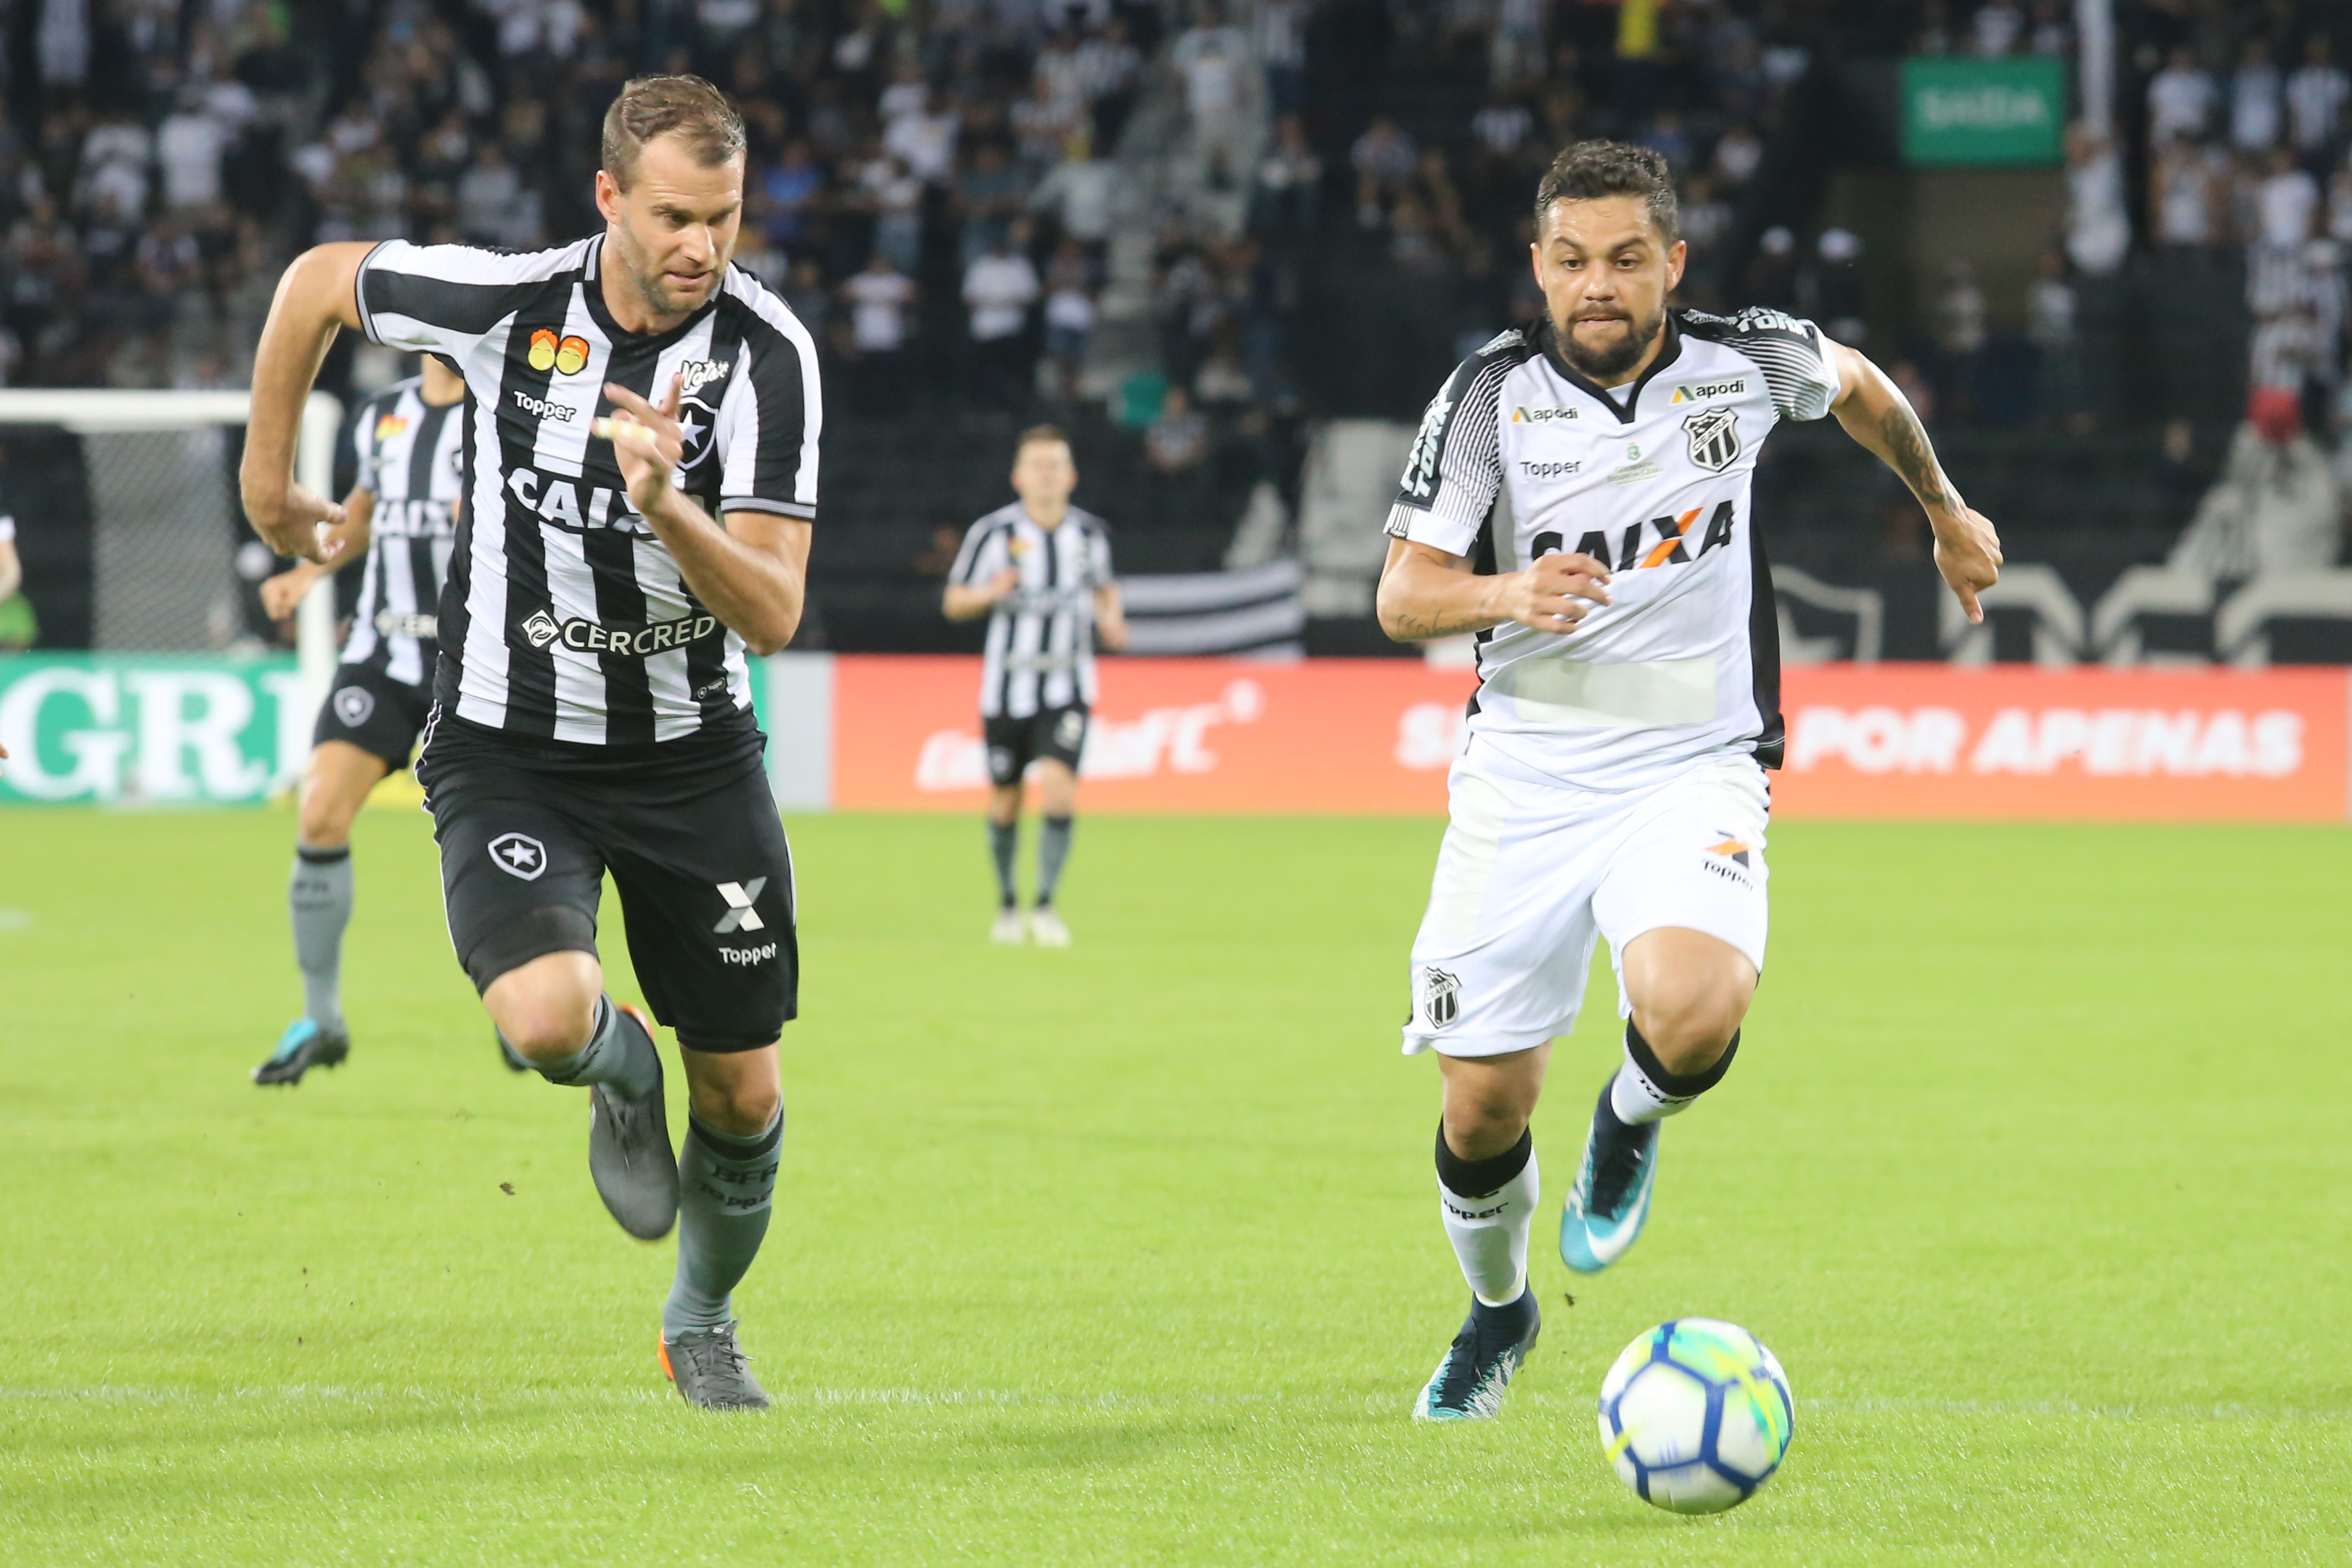 Na estreia de Lisca, Ceará melhora e empata fora de casa contra o Botafogo